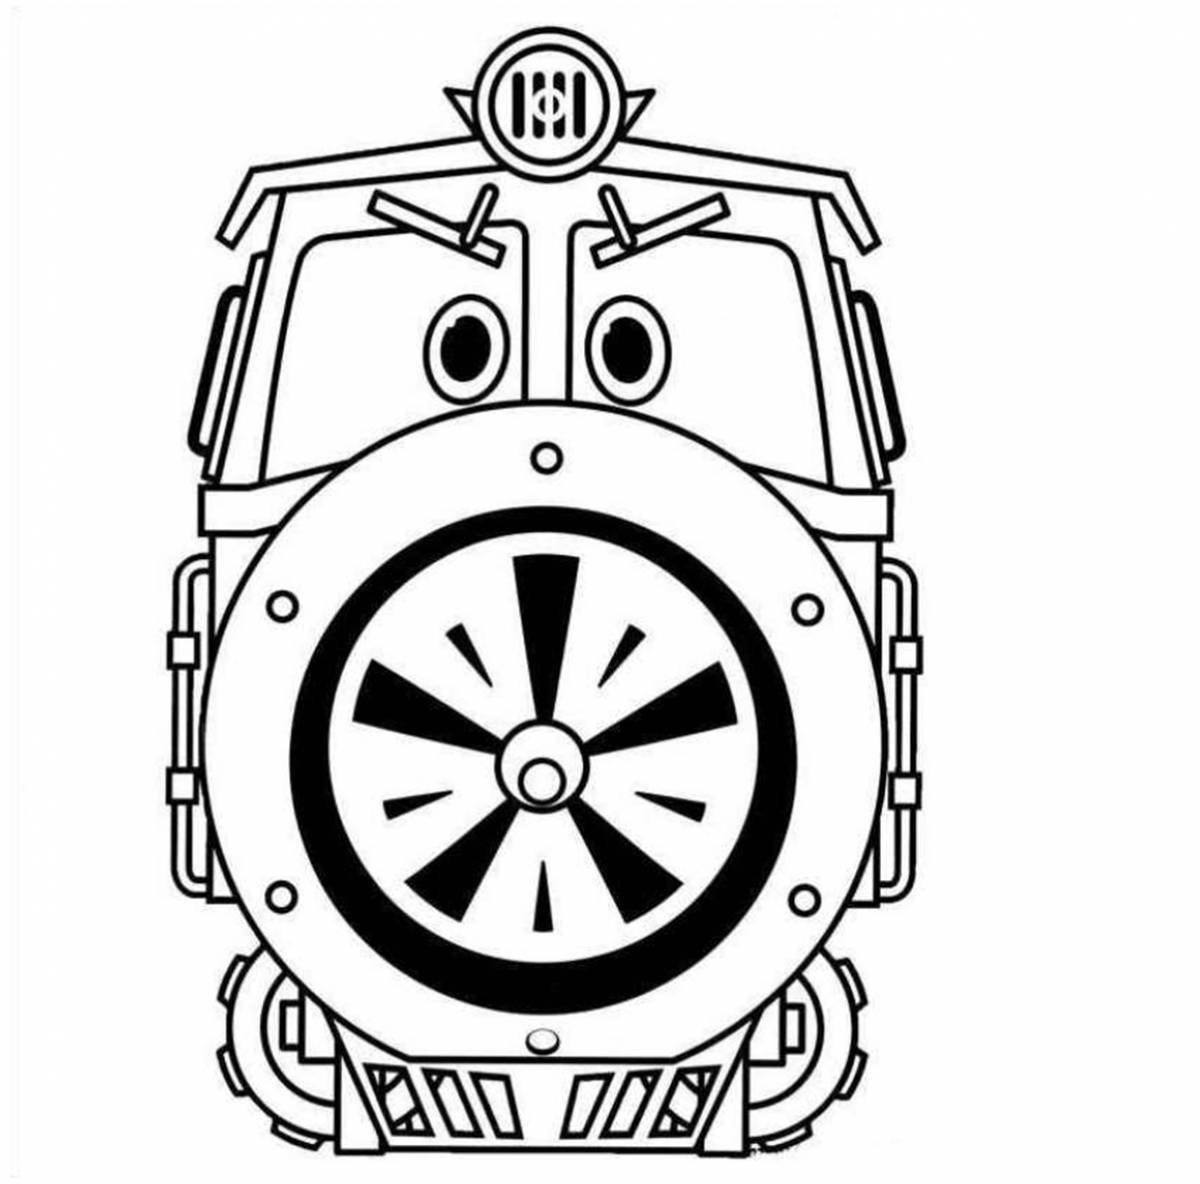 Charming kay train robots coloring book